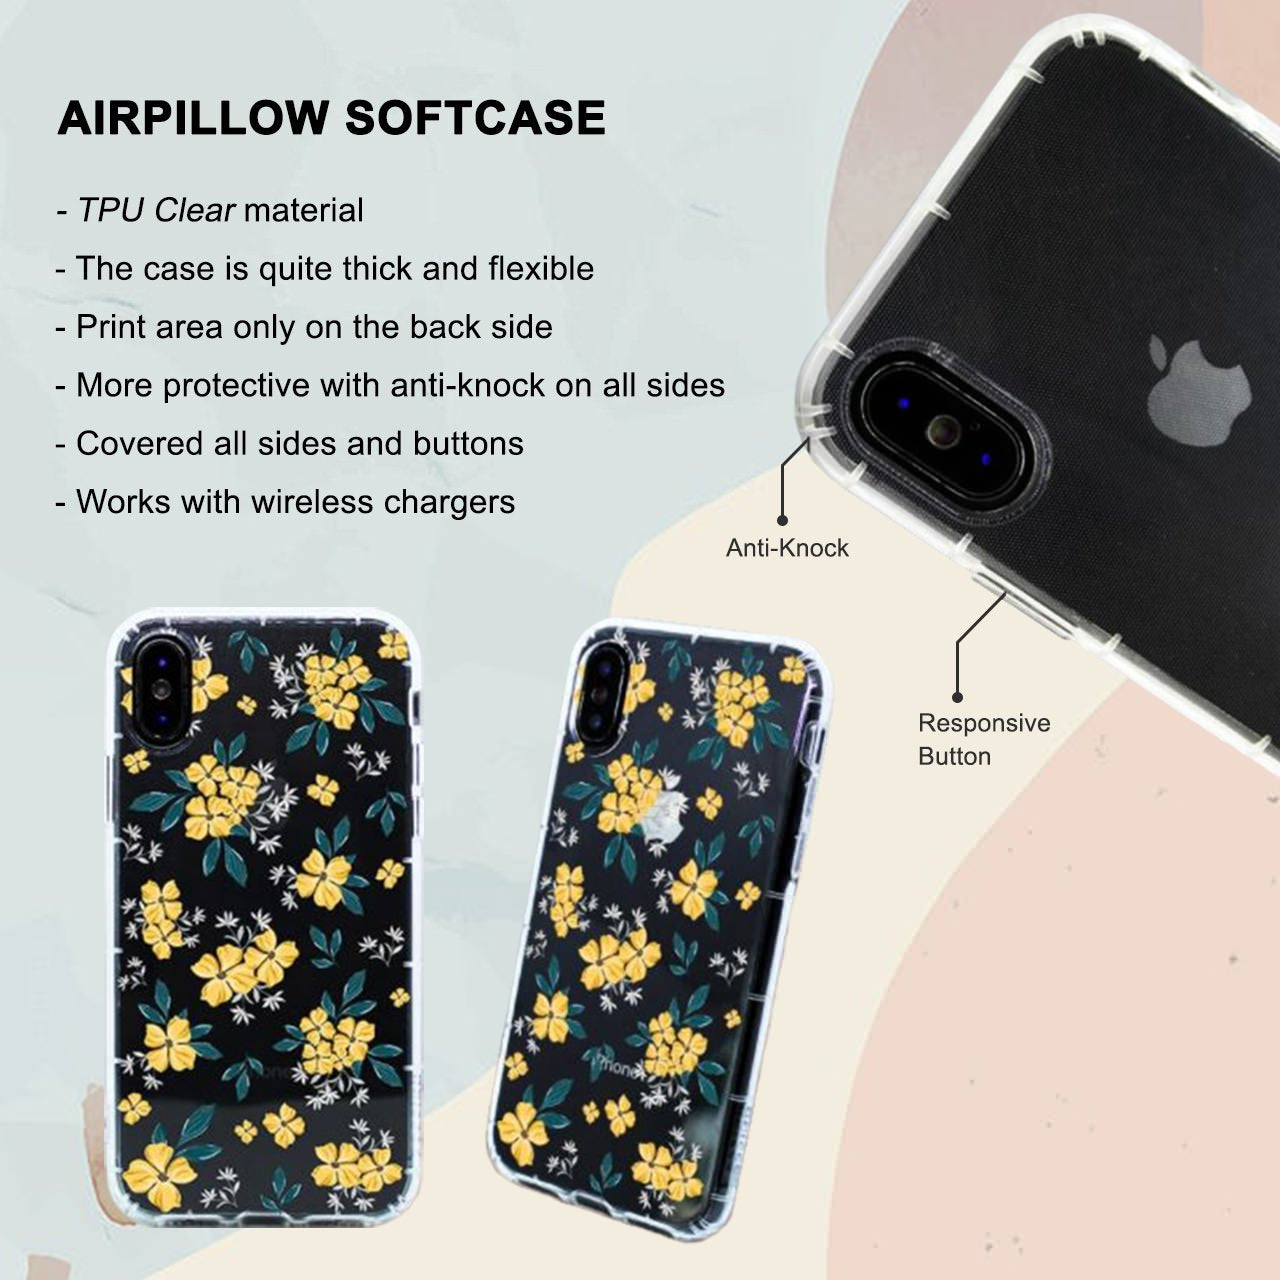 Asiimov iPhone 6 / 6s Plus Case